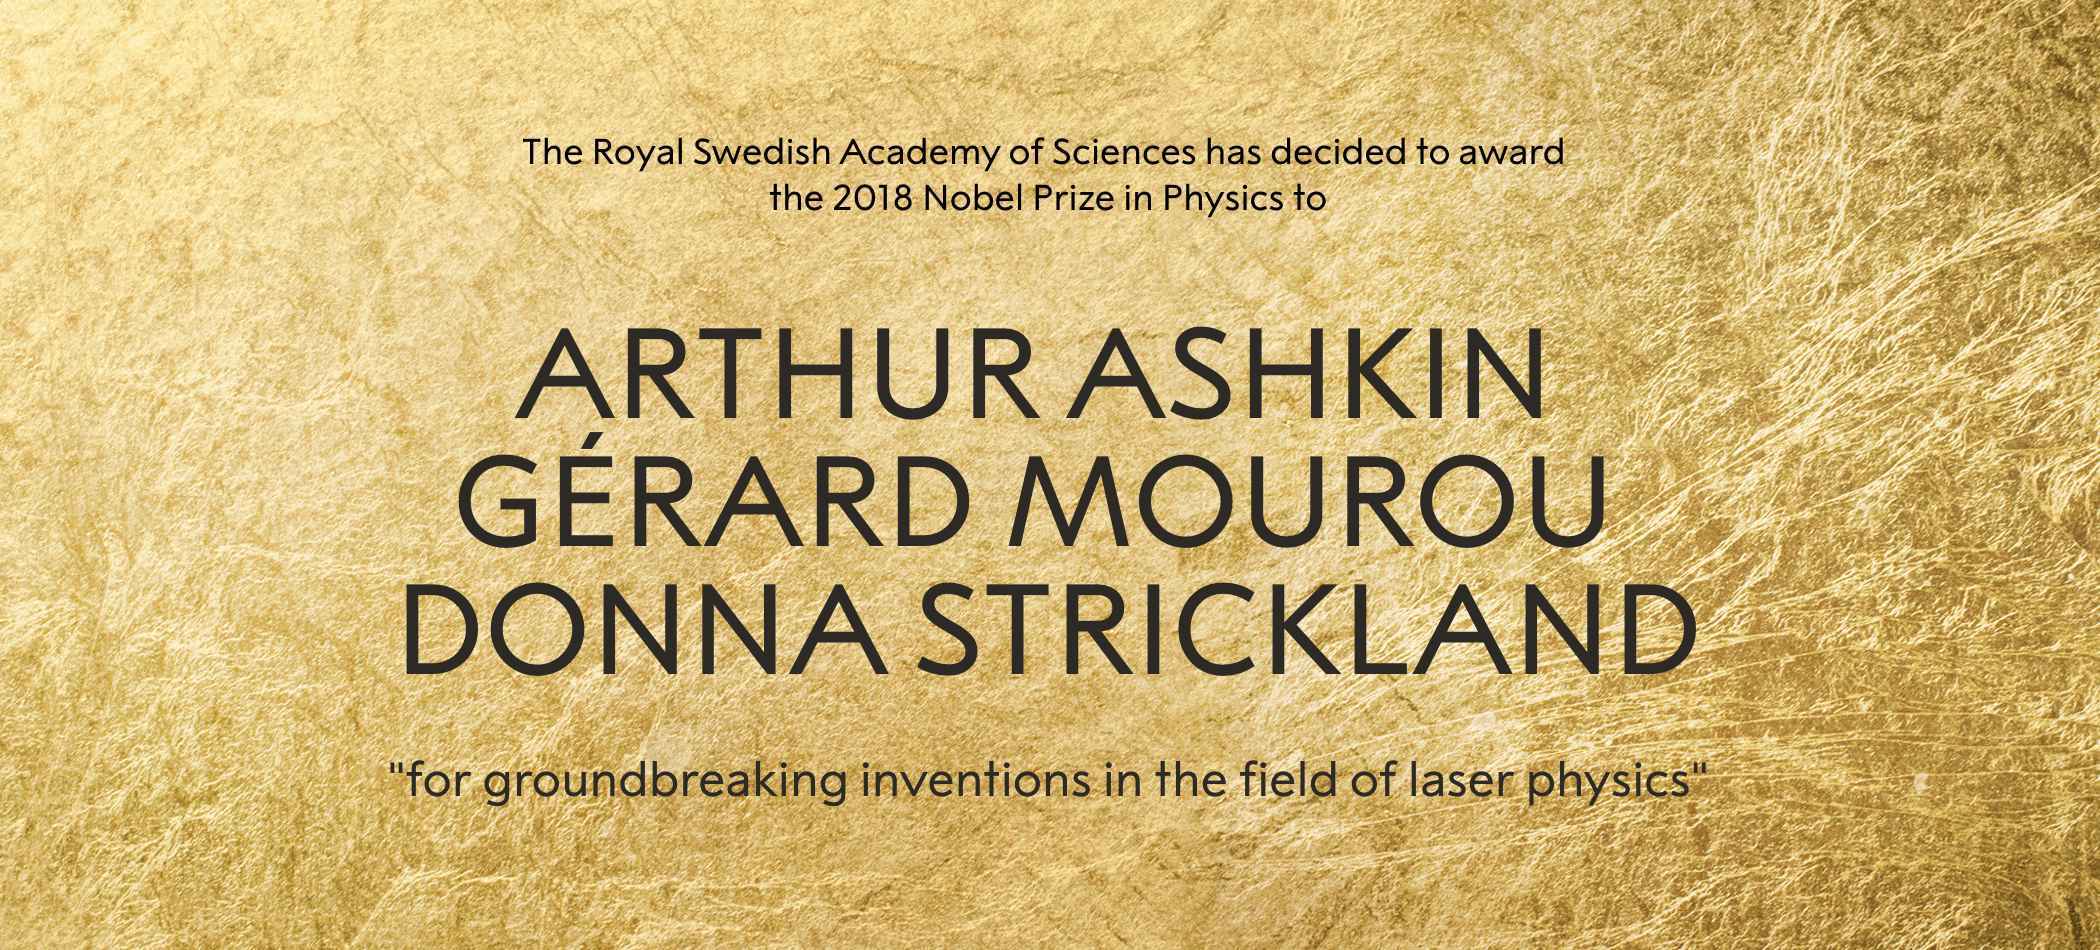 时隔半世纪女性物理学家终获诺贝尔奖 美加法科学家彻底改变激光物理学